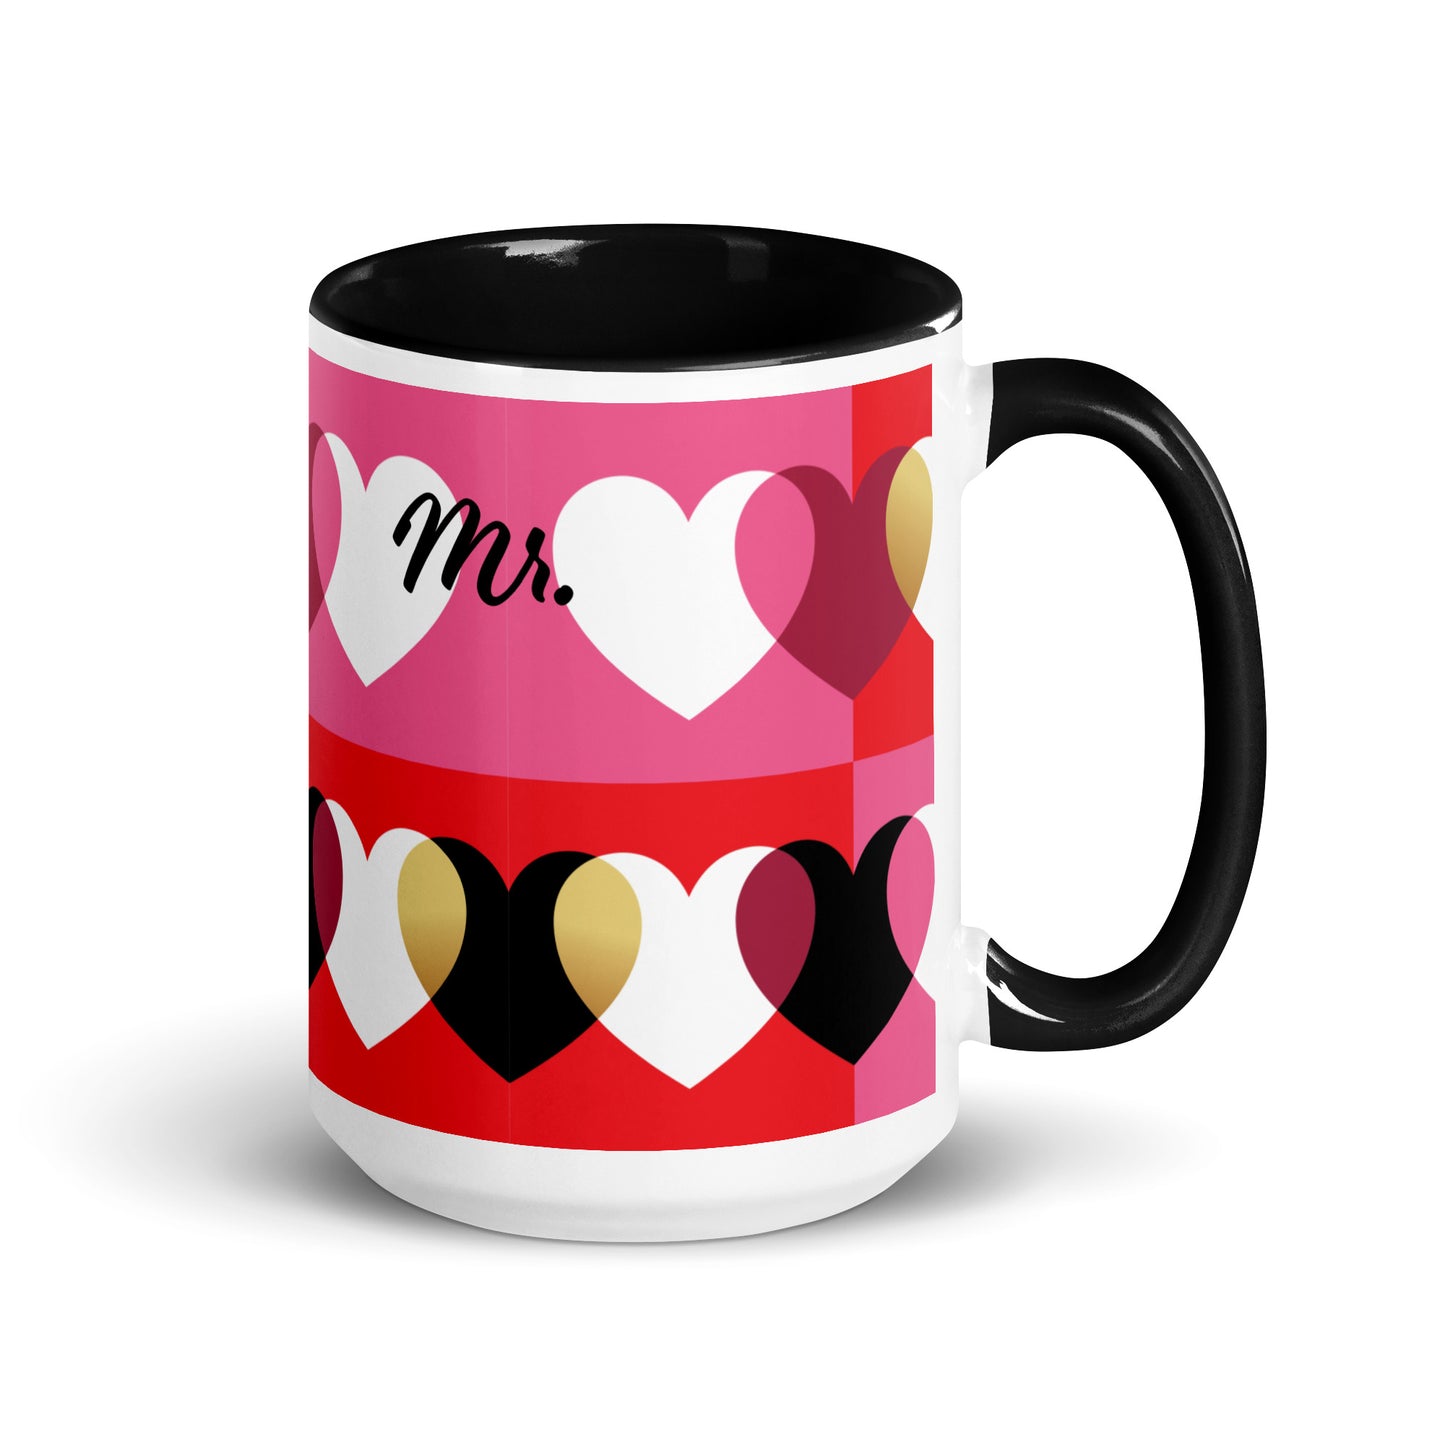 Love Mug set de 2, negro y rojo, Sr. y Sra., personalizado